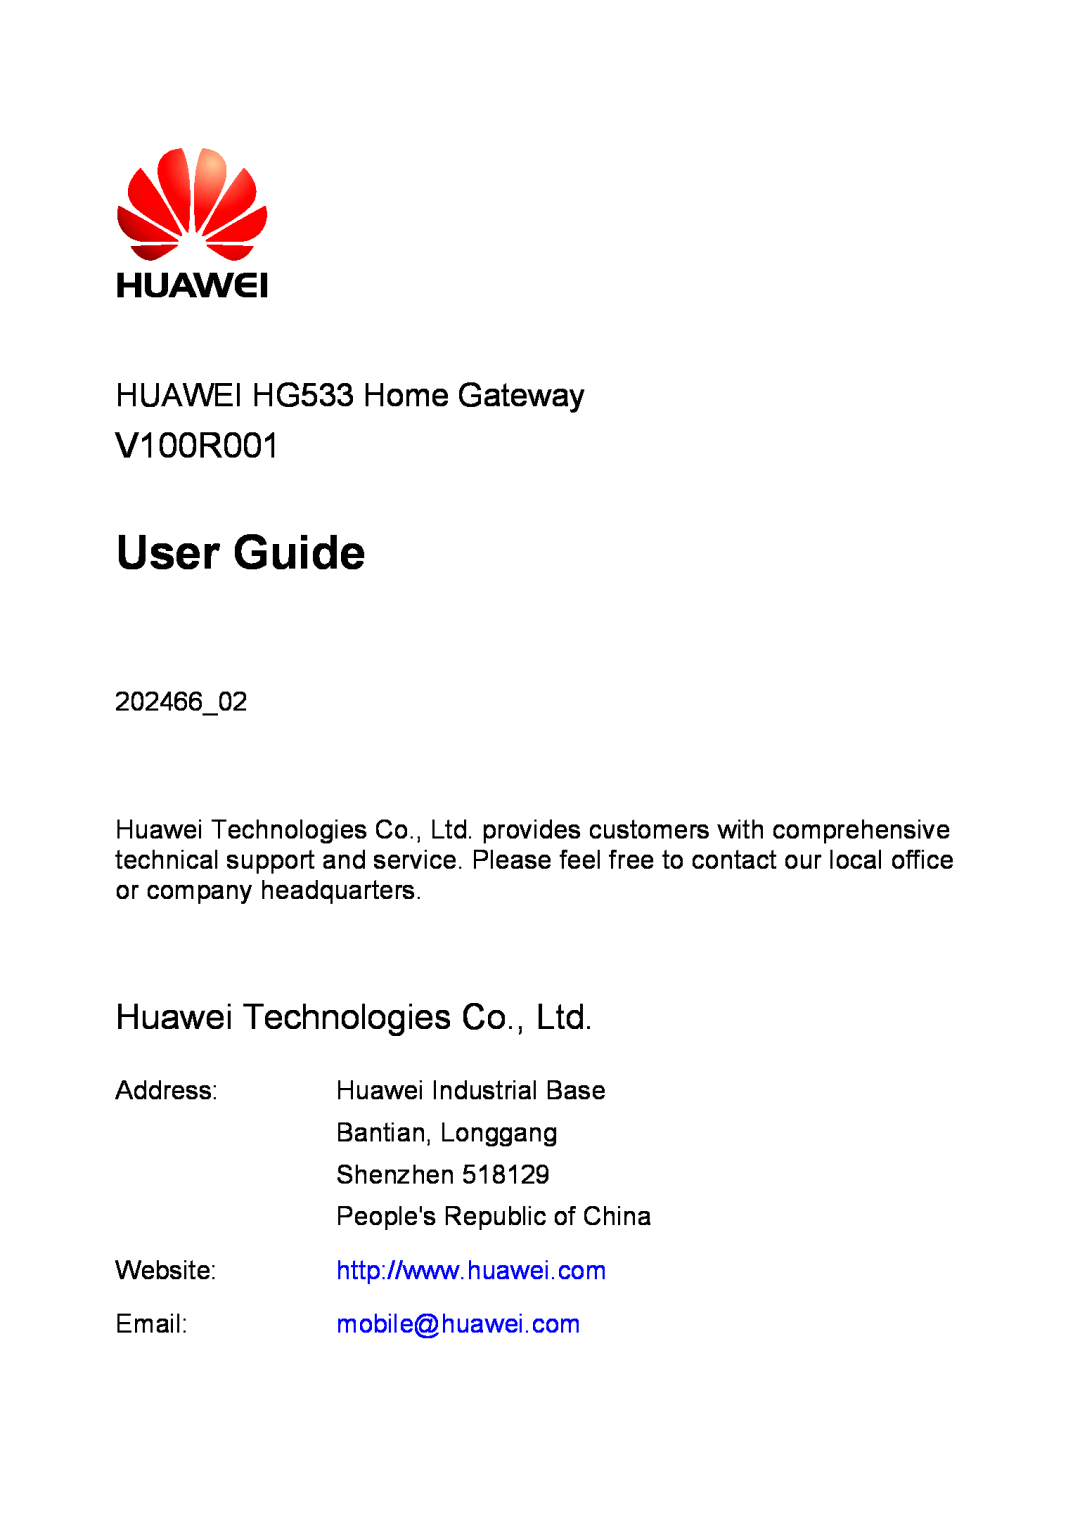 Huawei V100R001 manual User Guide, HUAWEI HG533 Home Gateway, mobile@huawei.com, Peoples Republic of China 